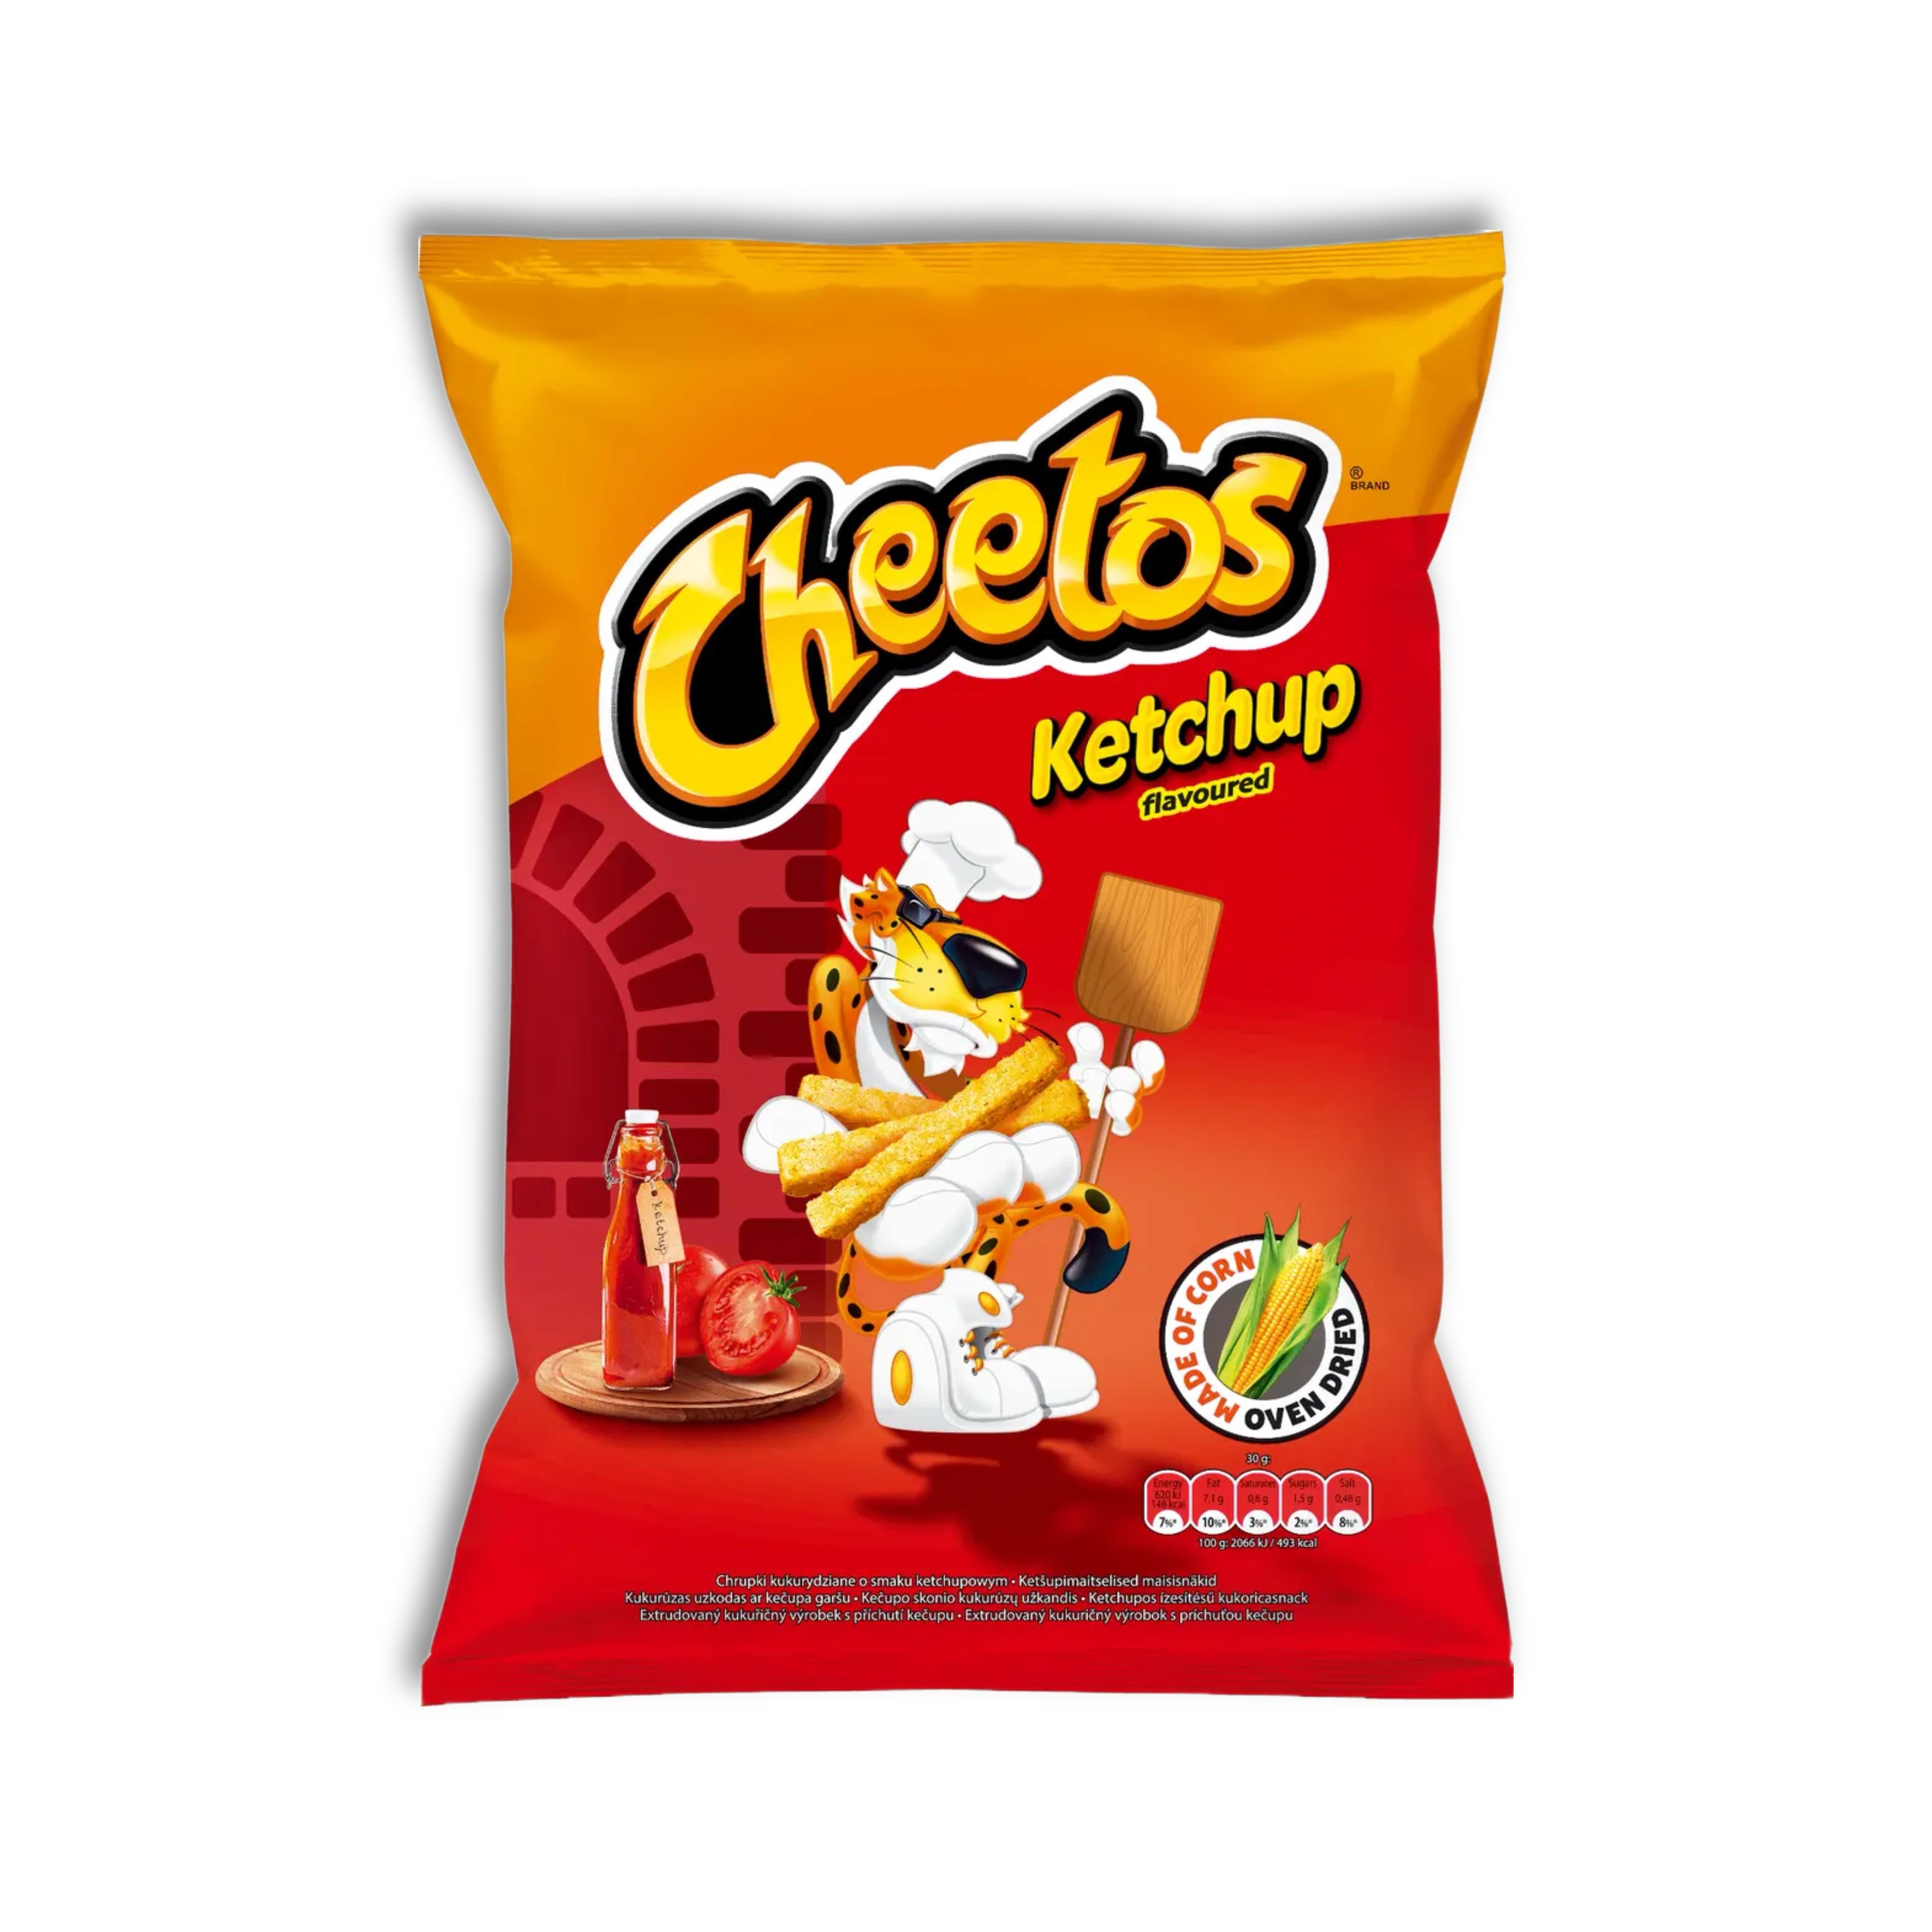 Cheetos - Ketchup